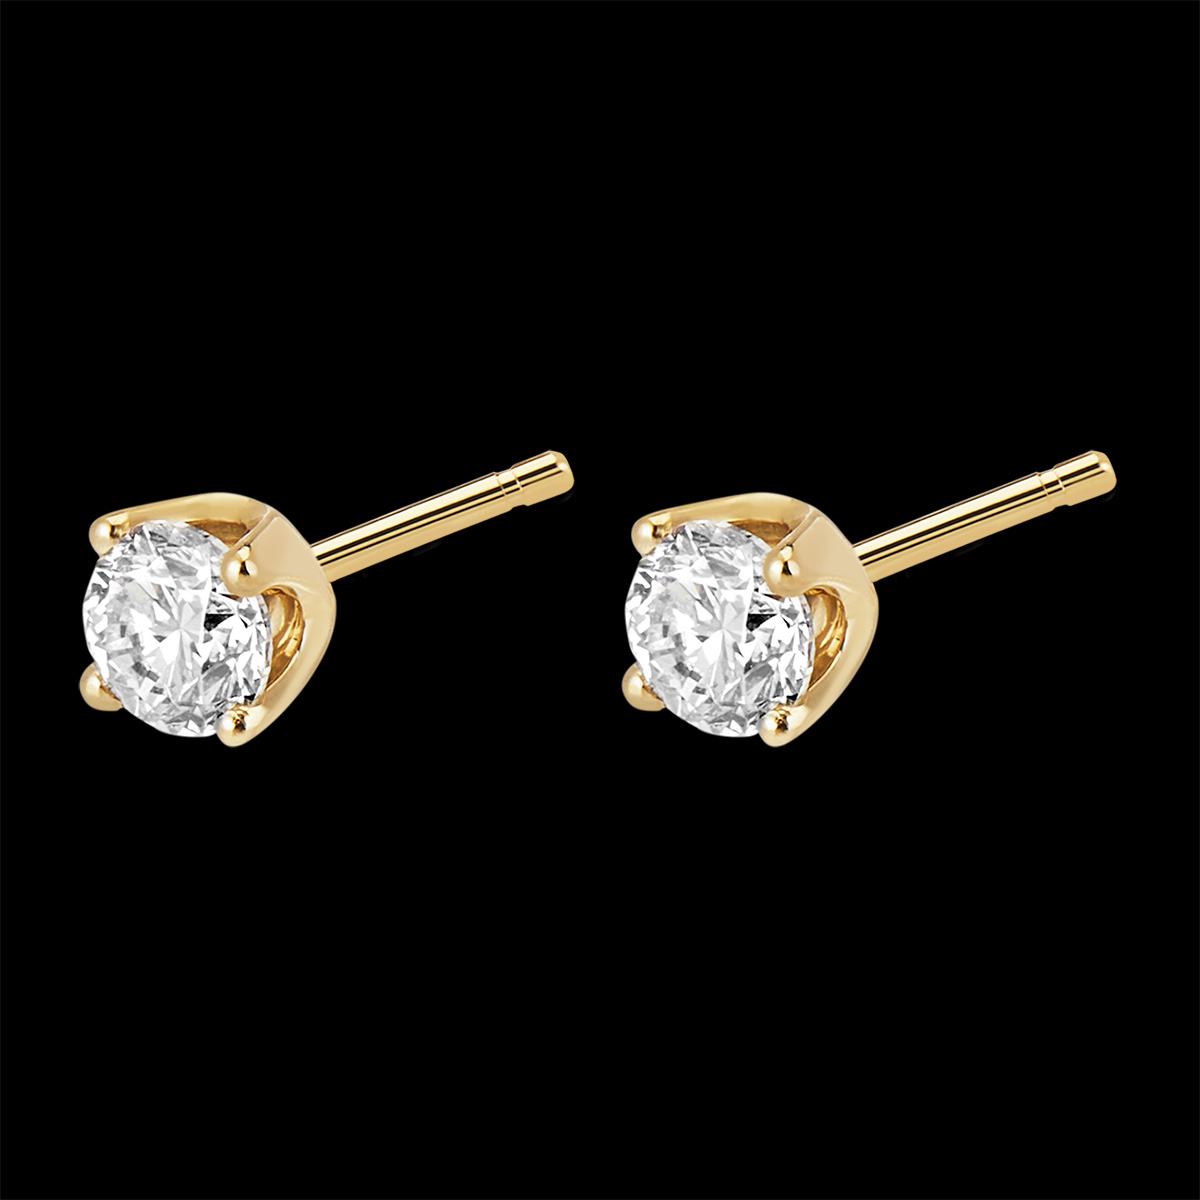 Cercei cu diamante (TGM+) - aur de 18k - 0.5 carate : bijuteriile Edenly